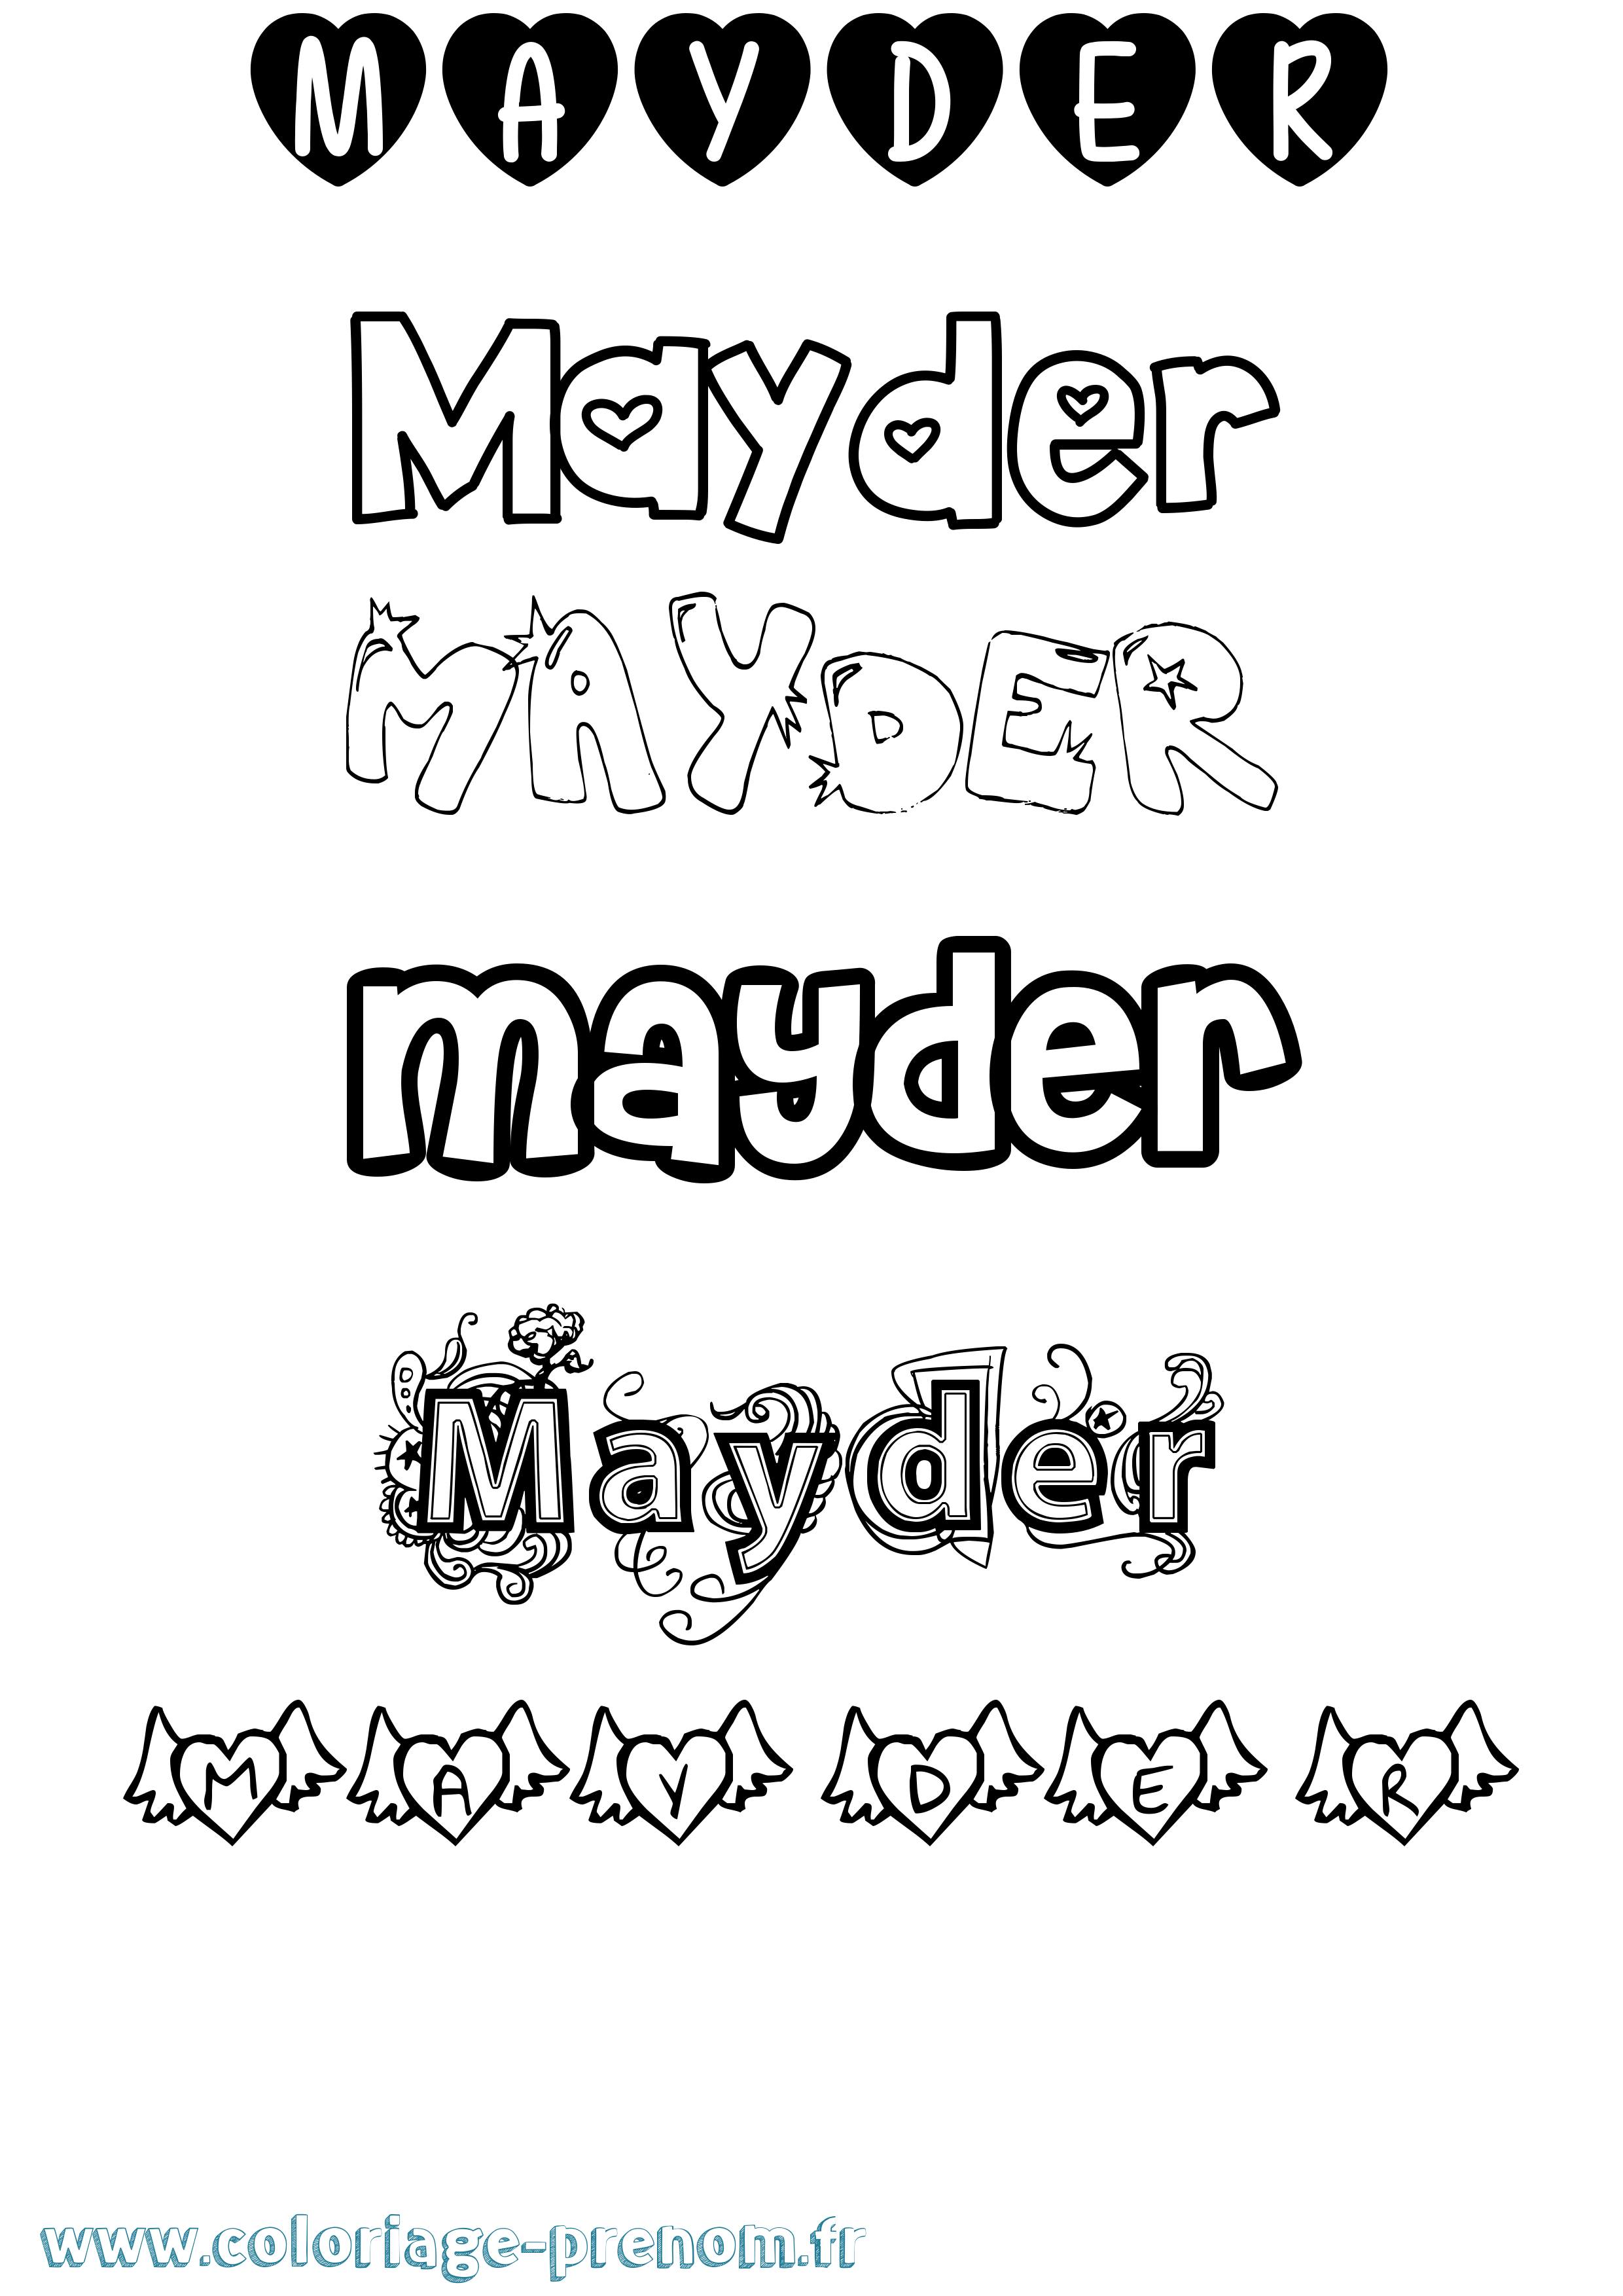 Coloriage prénom Mayder Girly